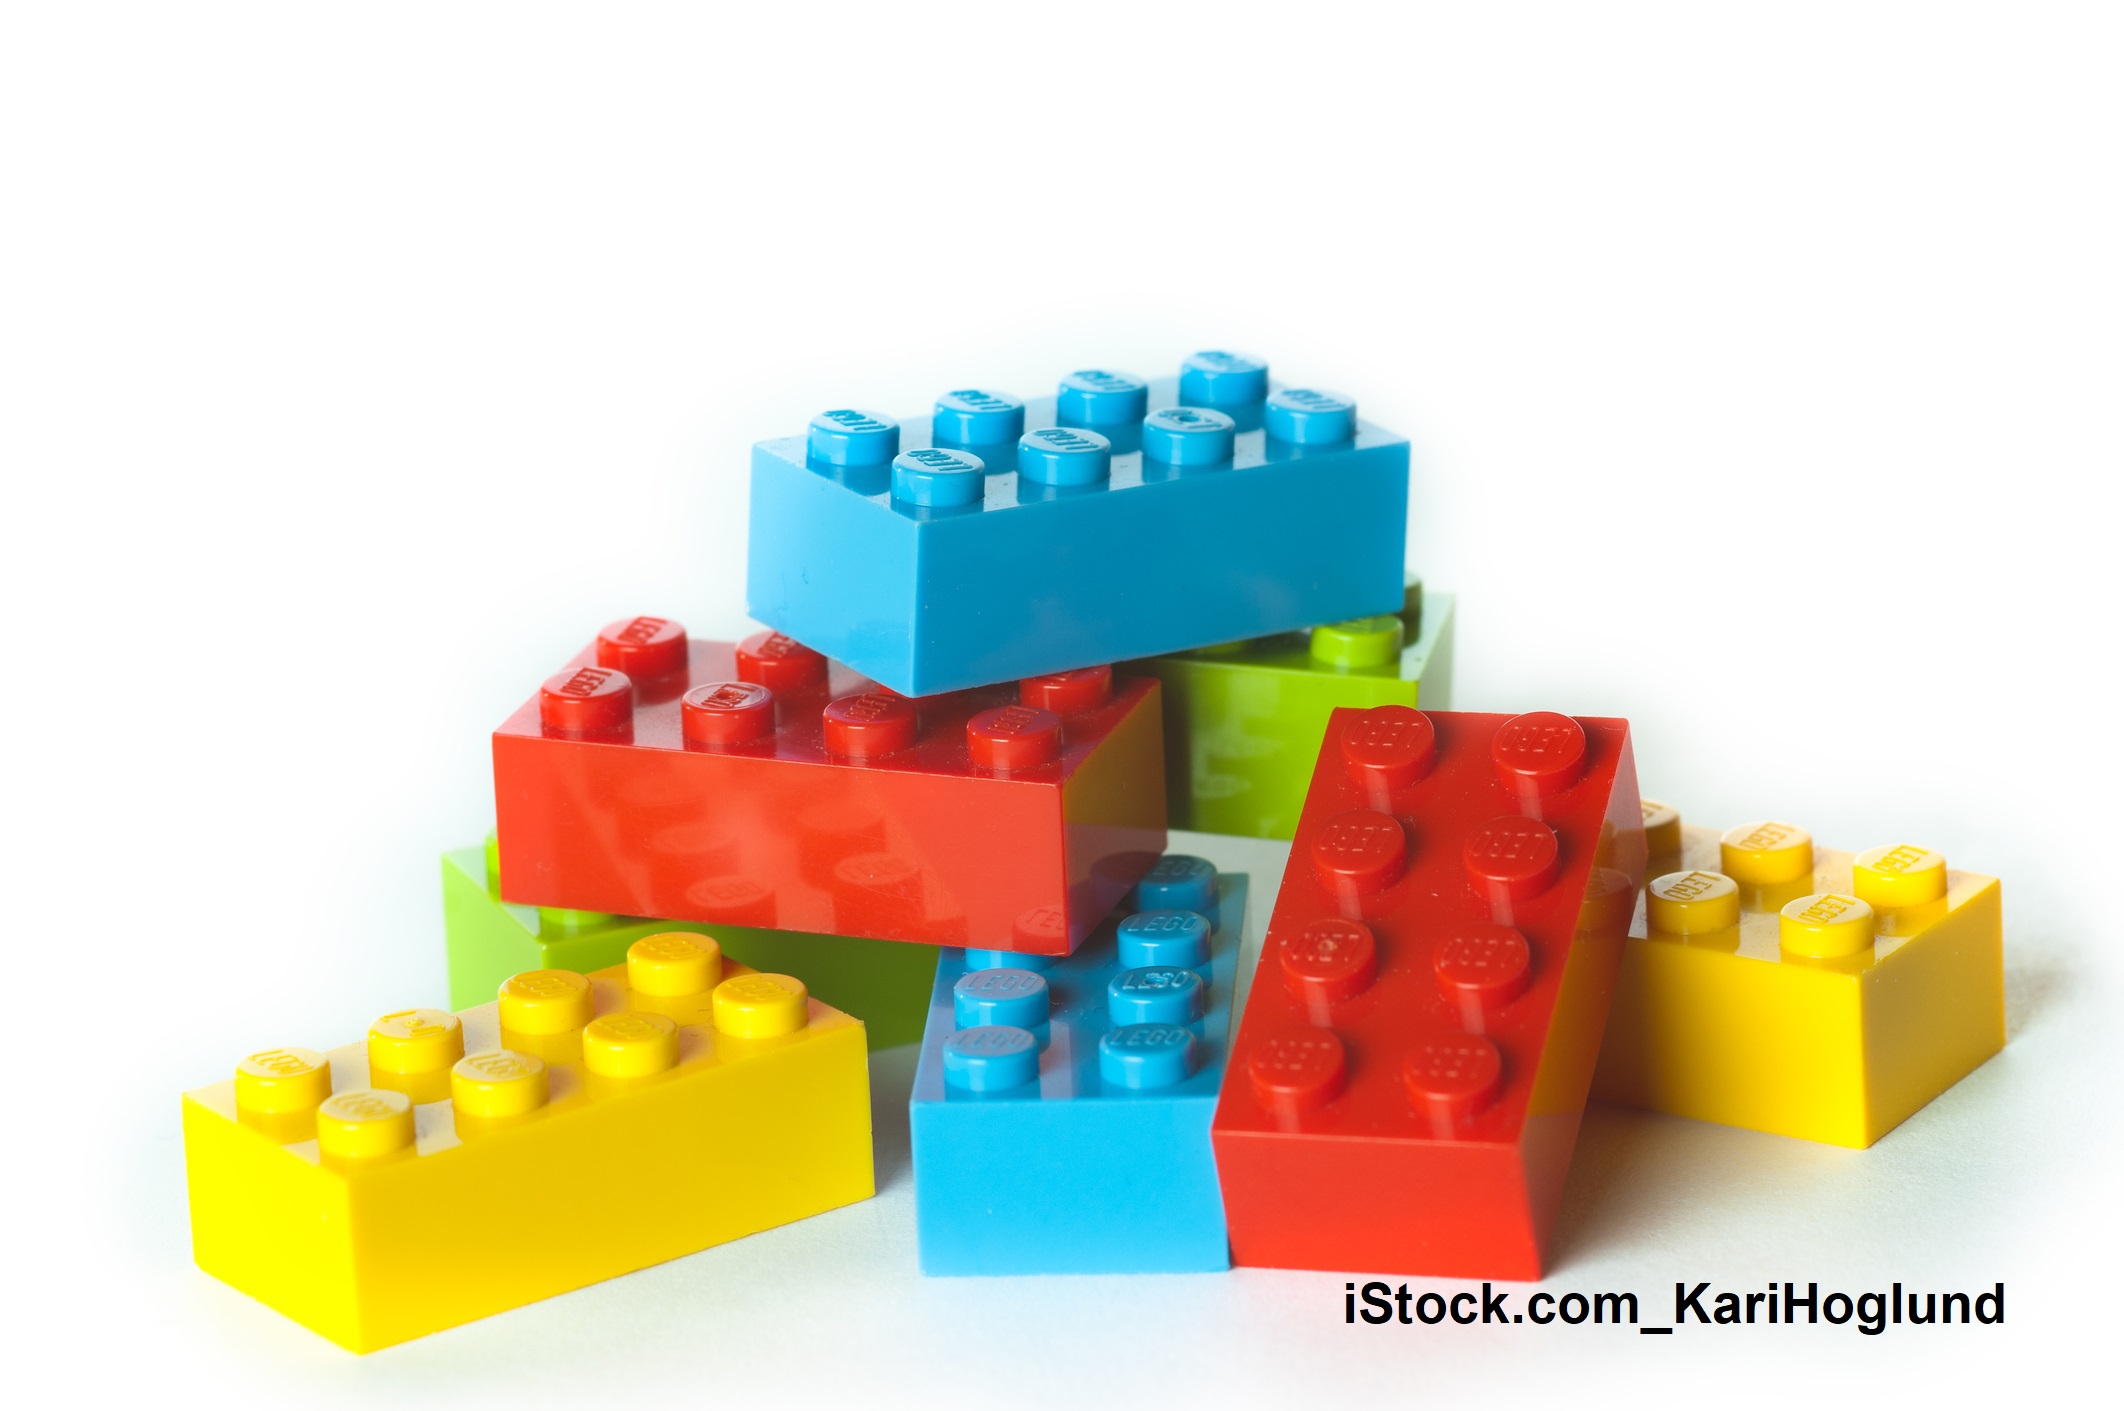 iStock.com KariHoglund Legosteine